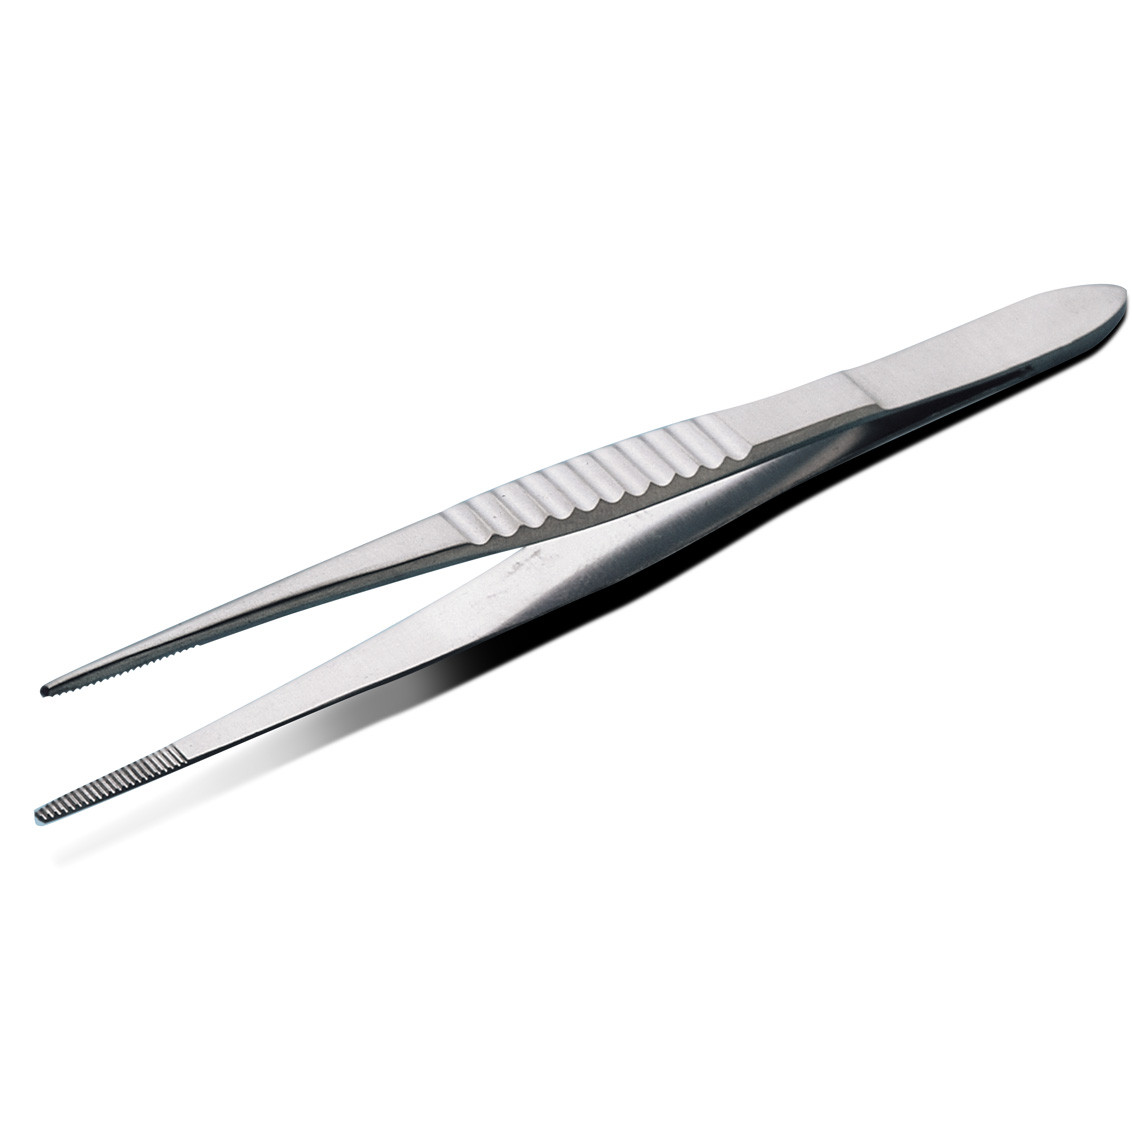 Standard professional tweezers 14.5 cm